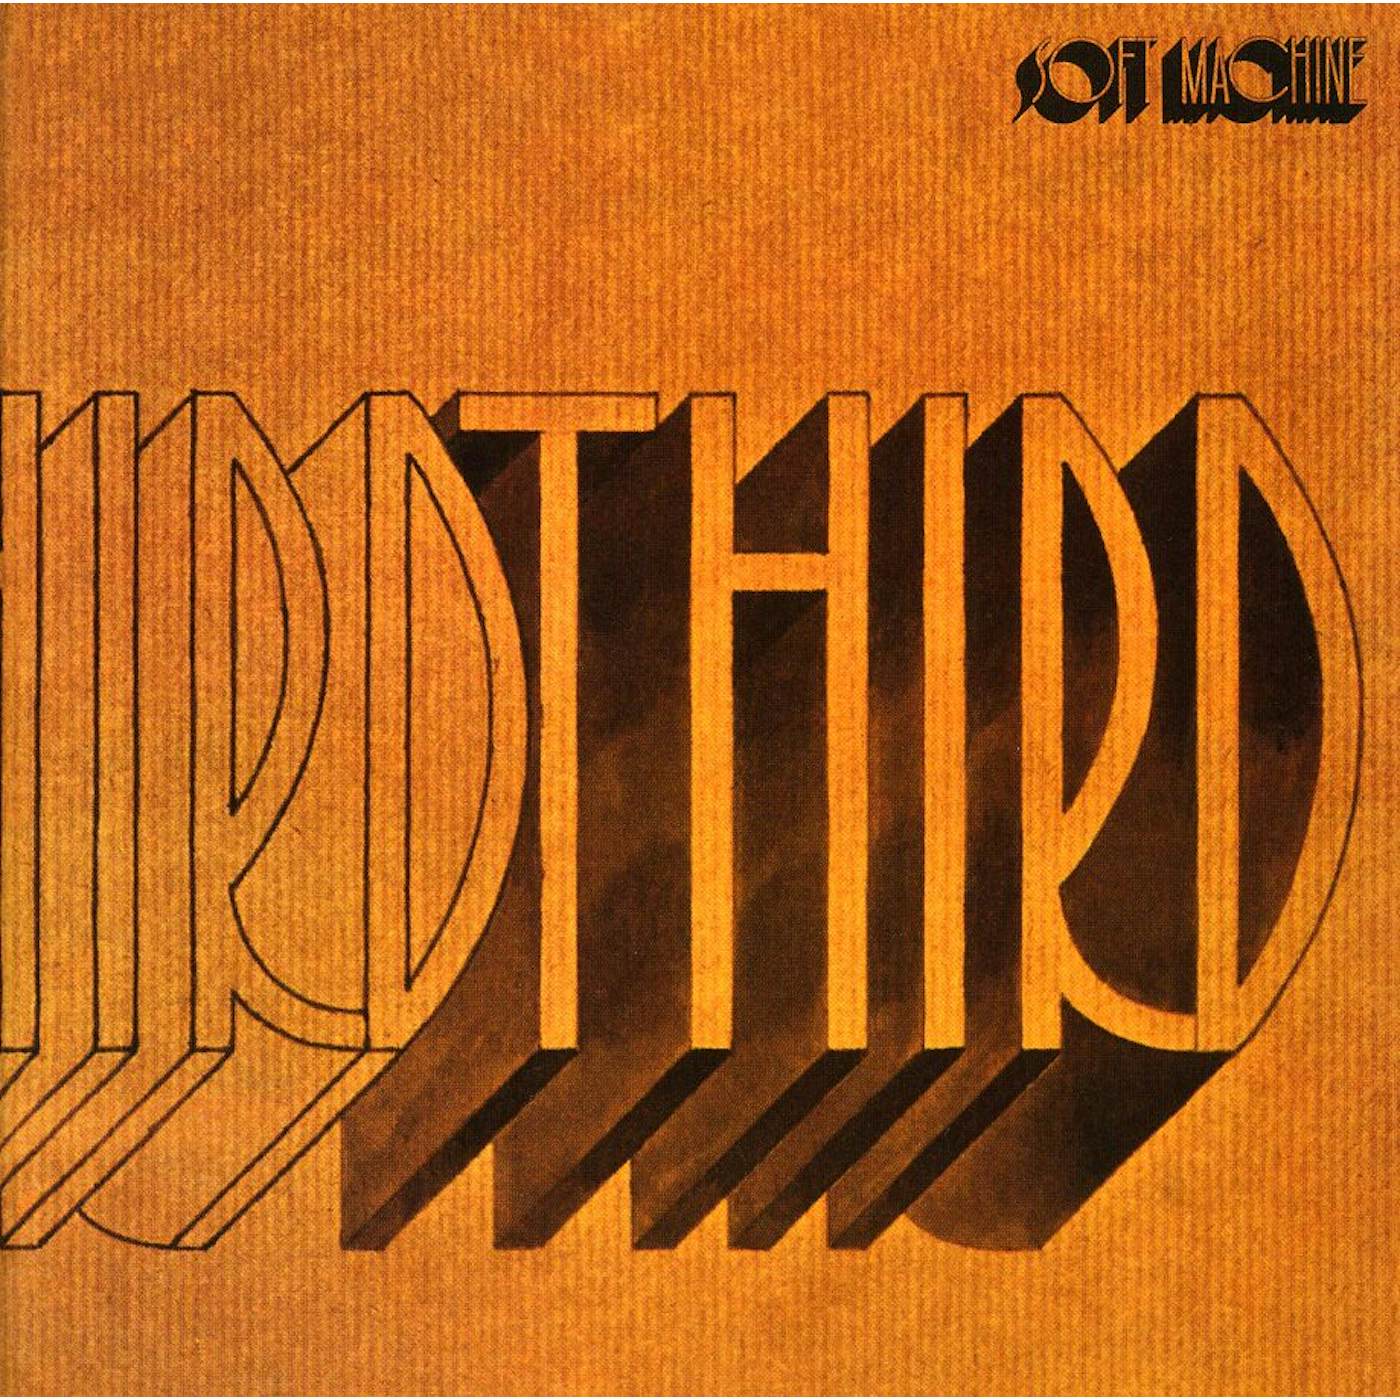 Soft Machine THIRD CD